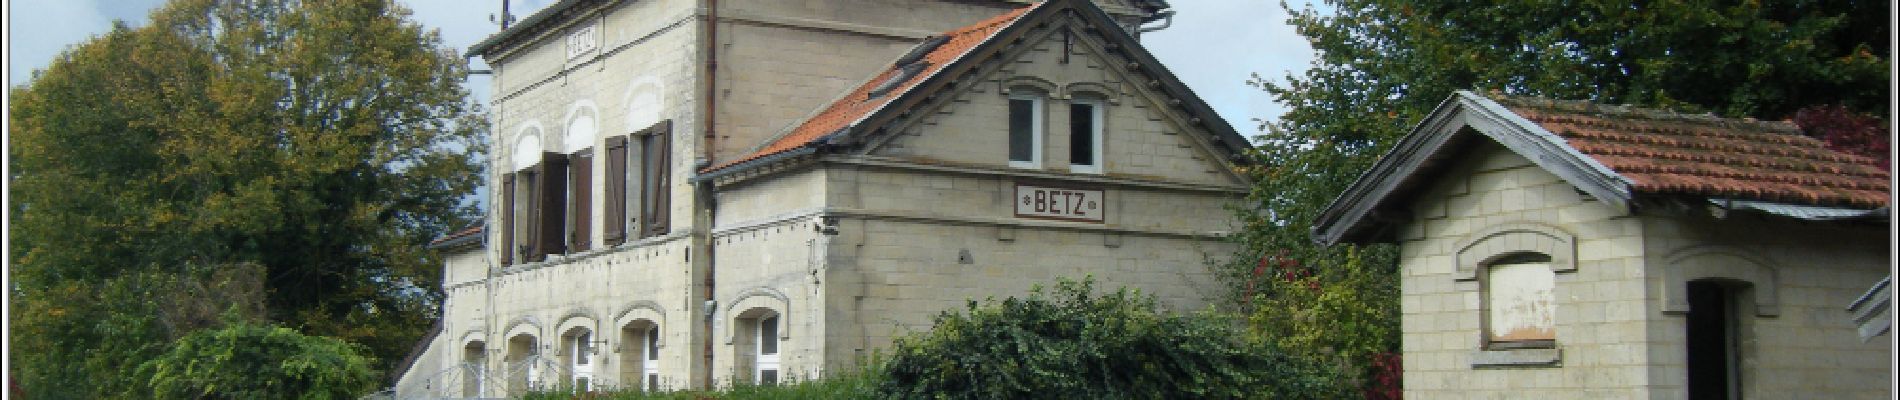 Punto de interés Betz - Ancienne gare de Betz - Photo